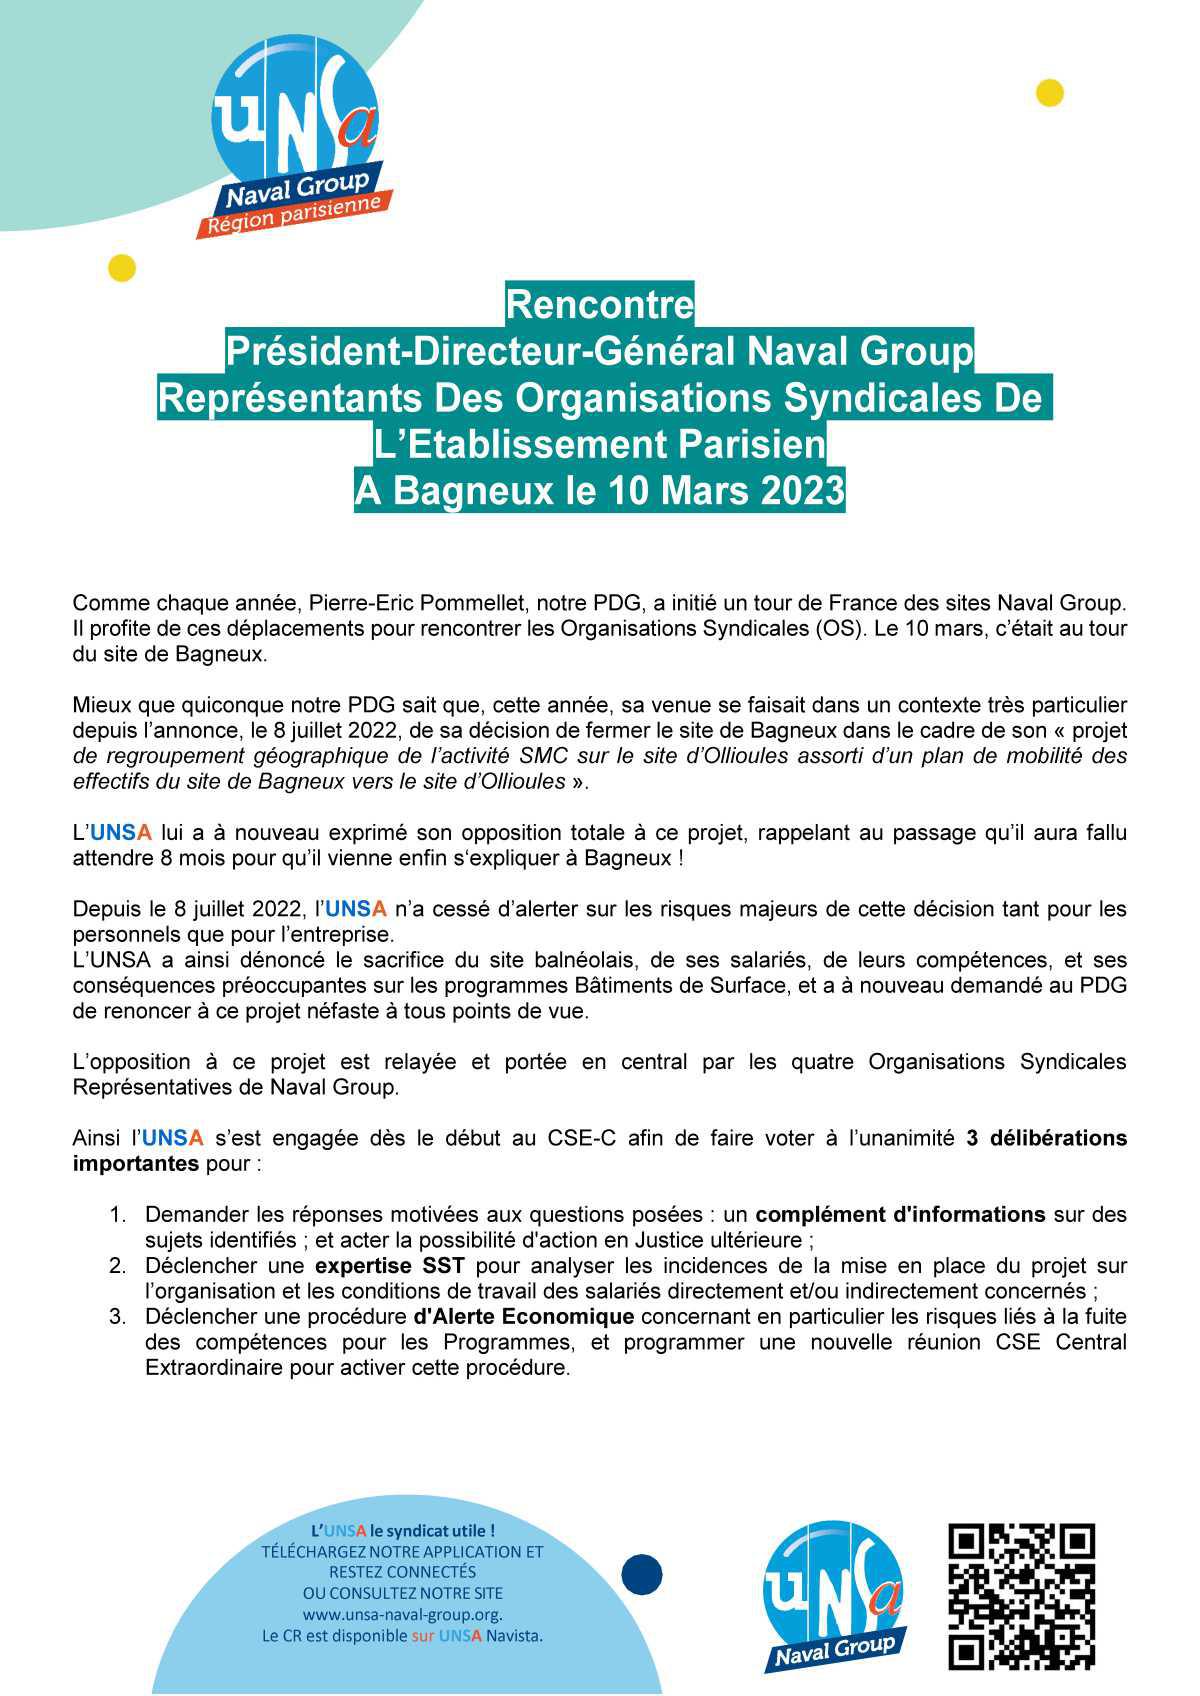 Rencontre Président-Directeur-Général Naval Group Représentants Des Organisations Syndicales De L’Etablissement Parisien - Bagneux le 10 Mars 2023